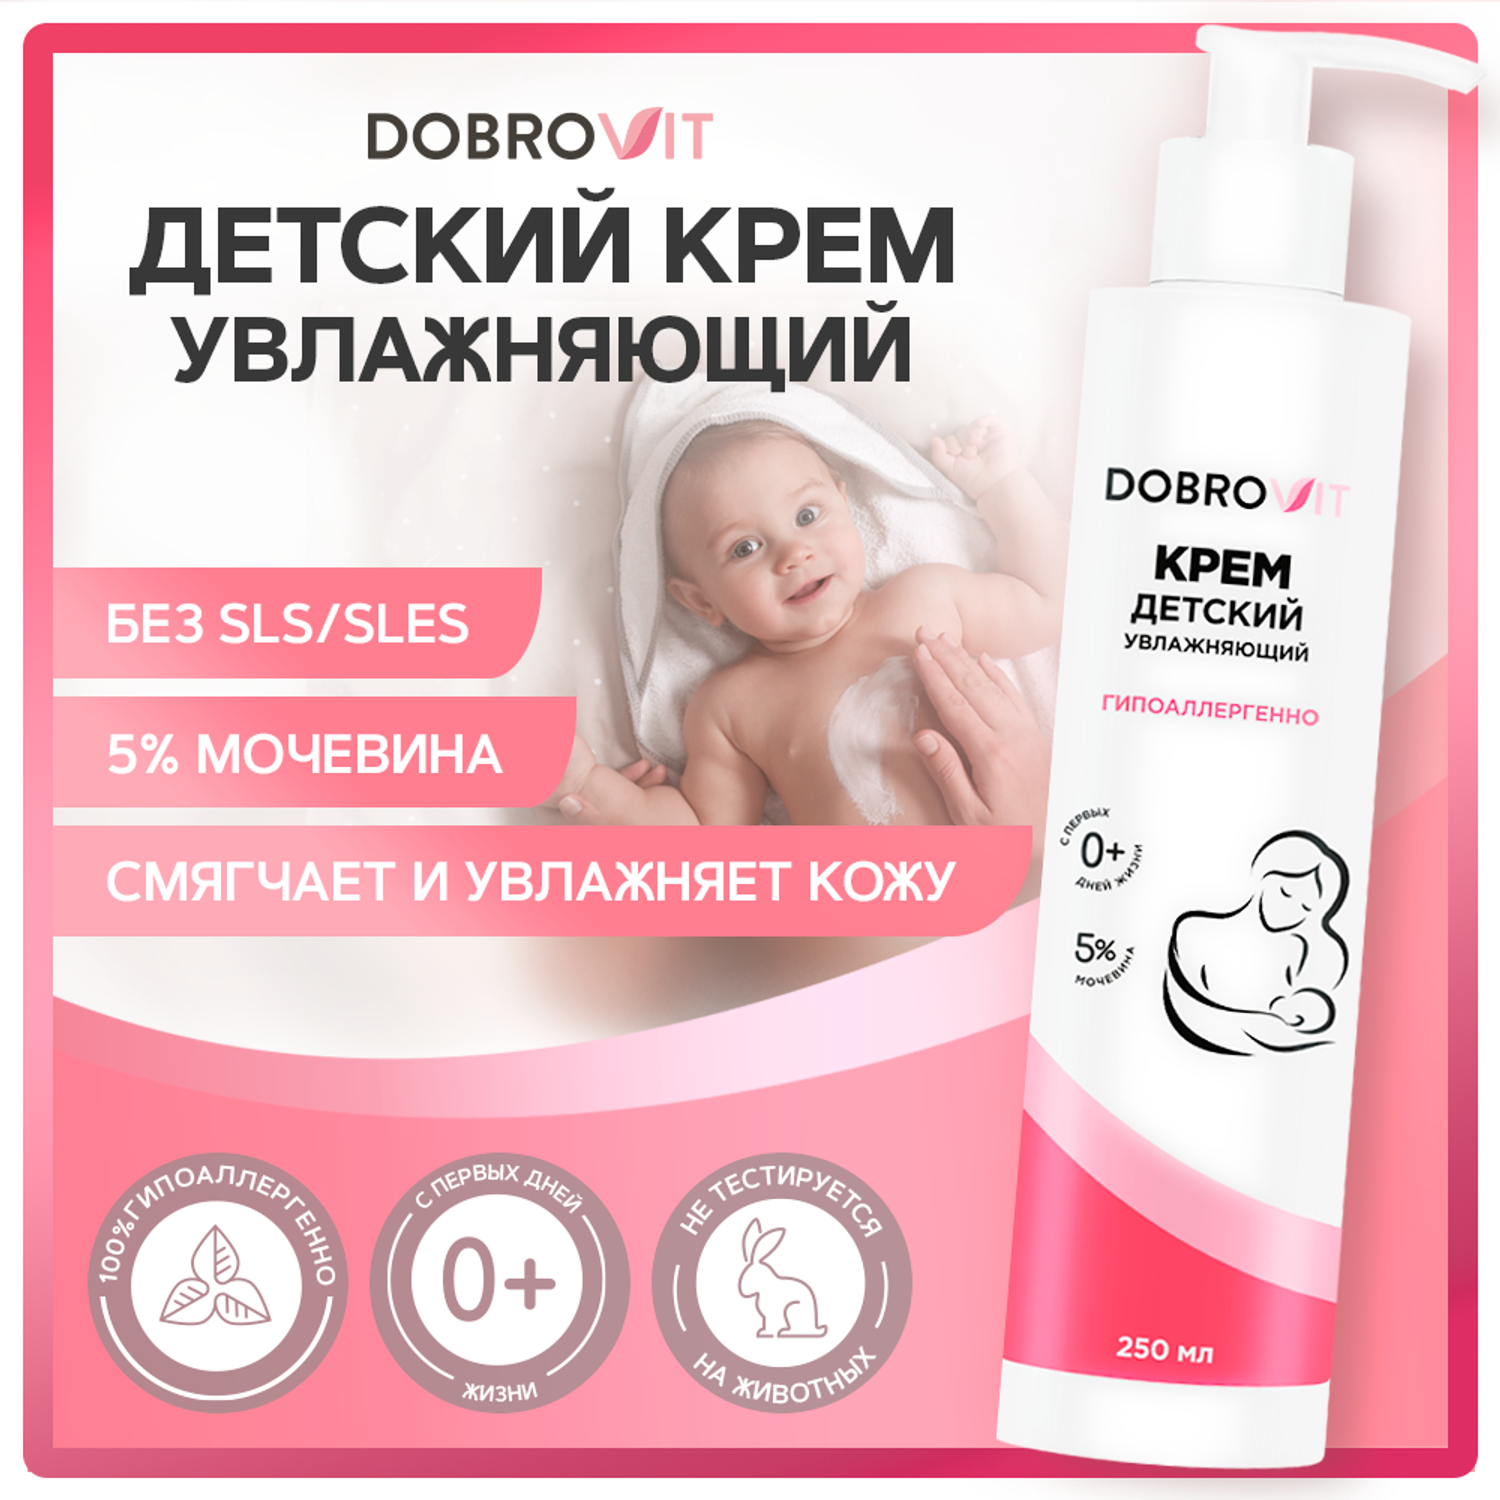 Детский крем DOBROVIT увлажняющий для новорожденных питательный от молочных корочек 250 мл - фото 2